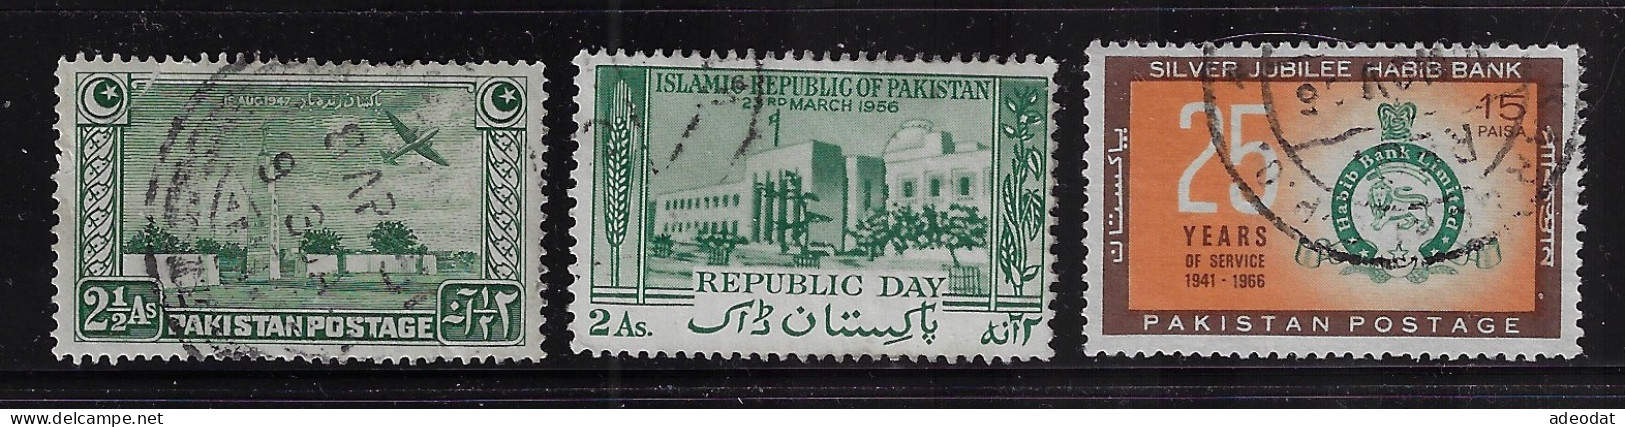 PAKISTAN  1948,56,66  SCOTT #21,82,224   USED  $0.80 - Pakistán